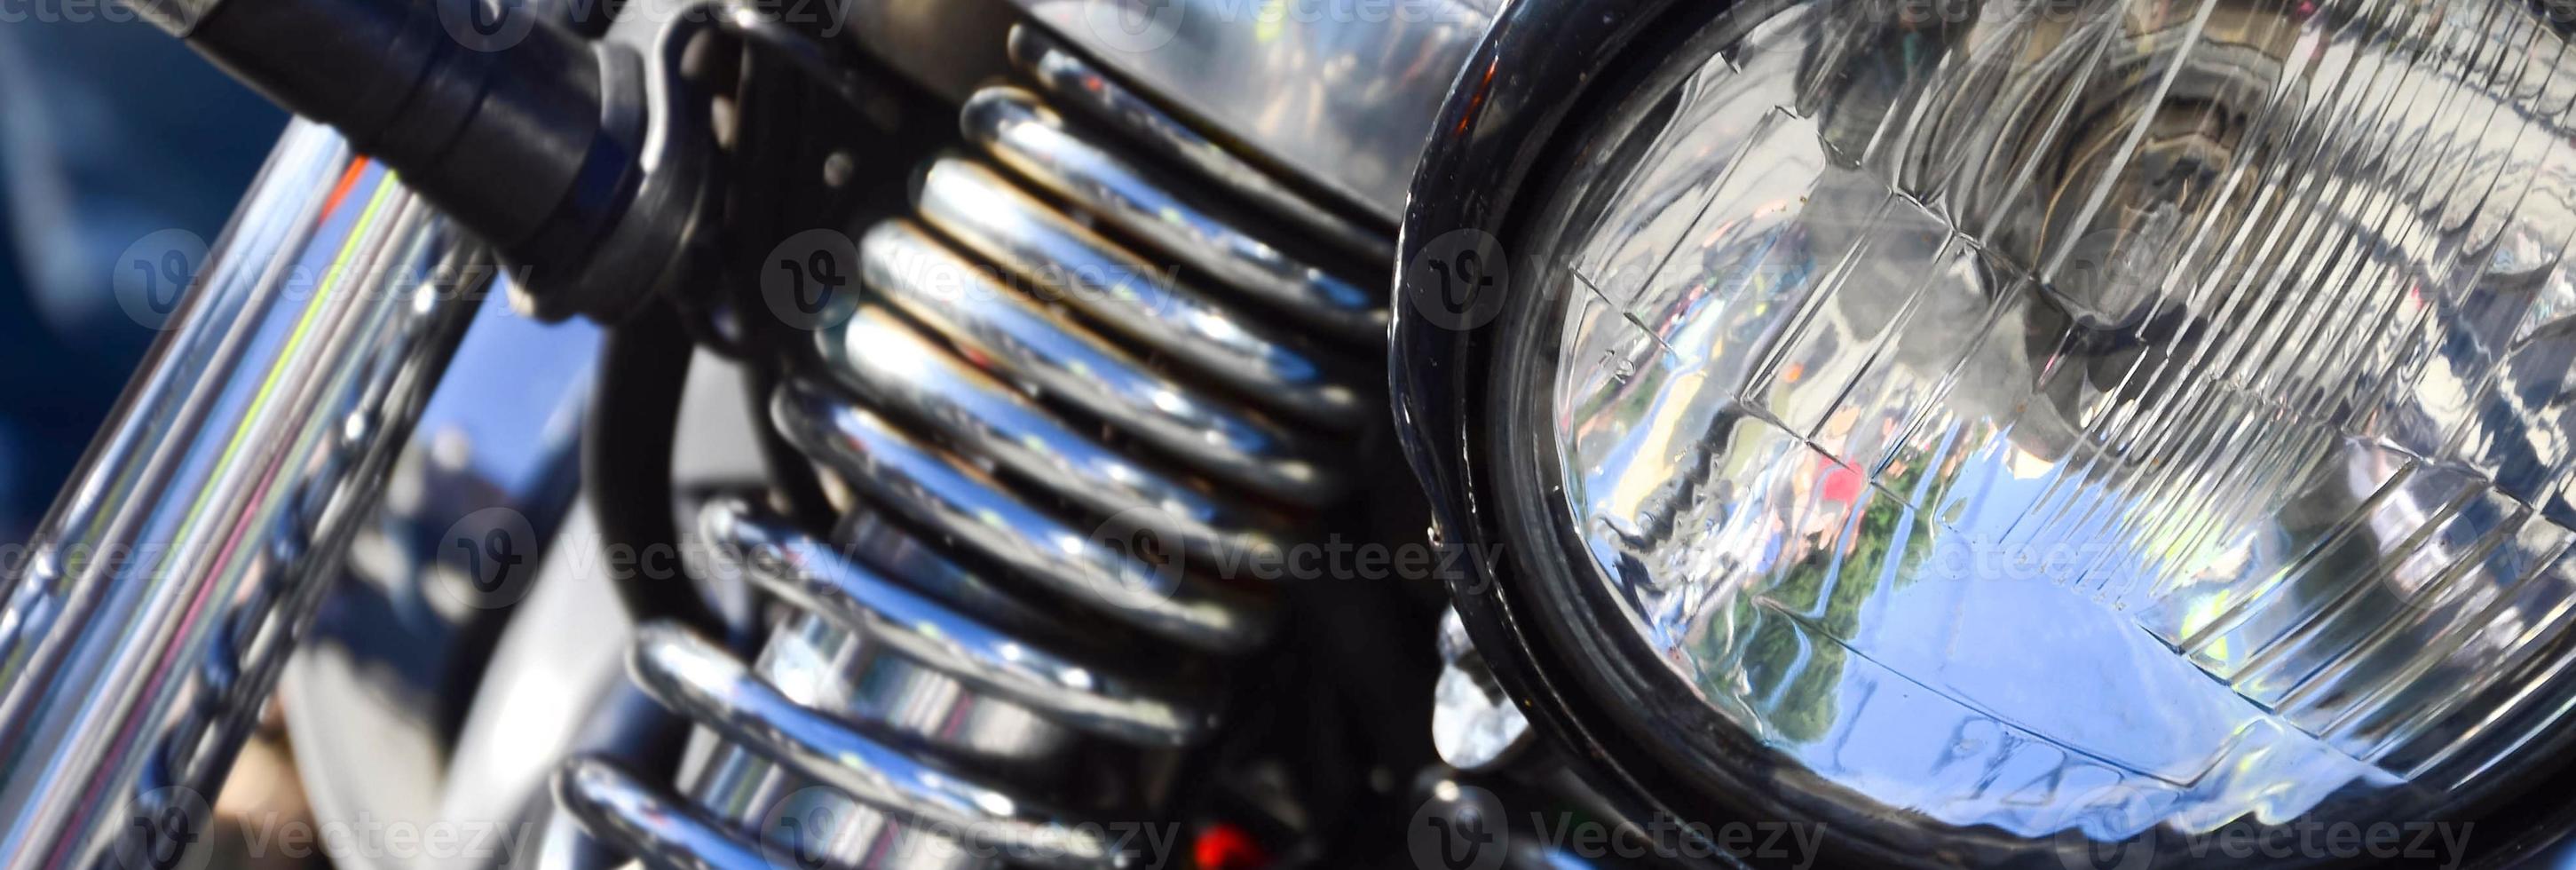 fragment de lampe brillante chromée de vieille moto classique photo